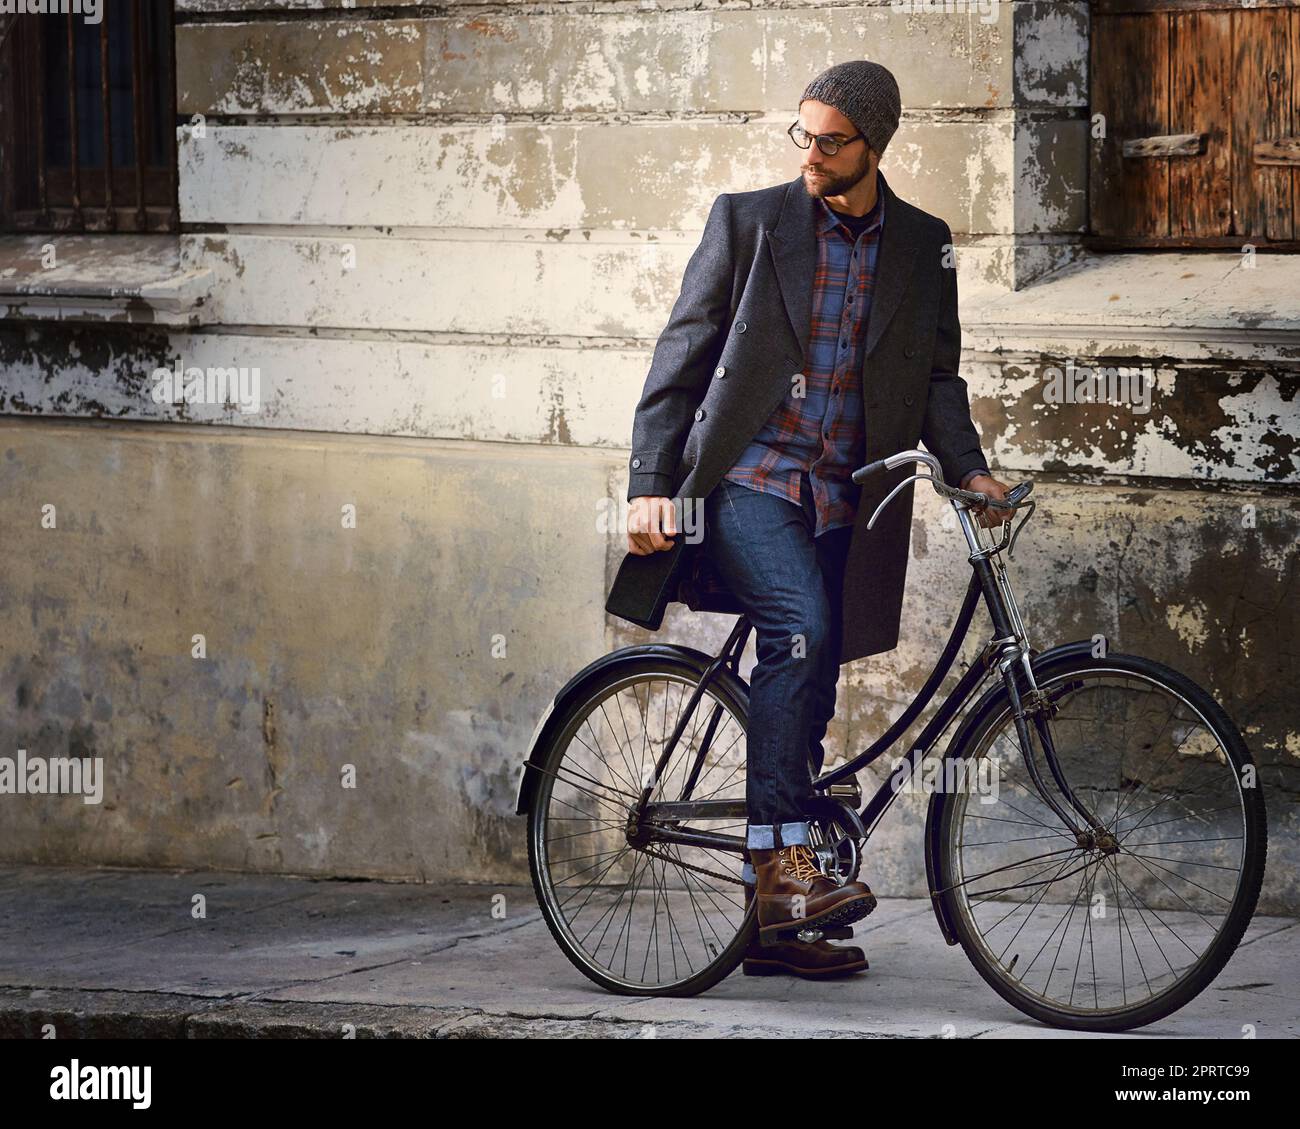 Voyager avec style. Un beau jeune homme sur son vélo se demandant autour de la ville Banque D'Images